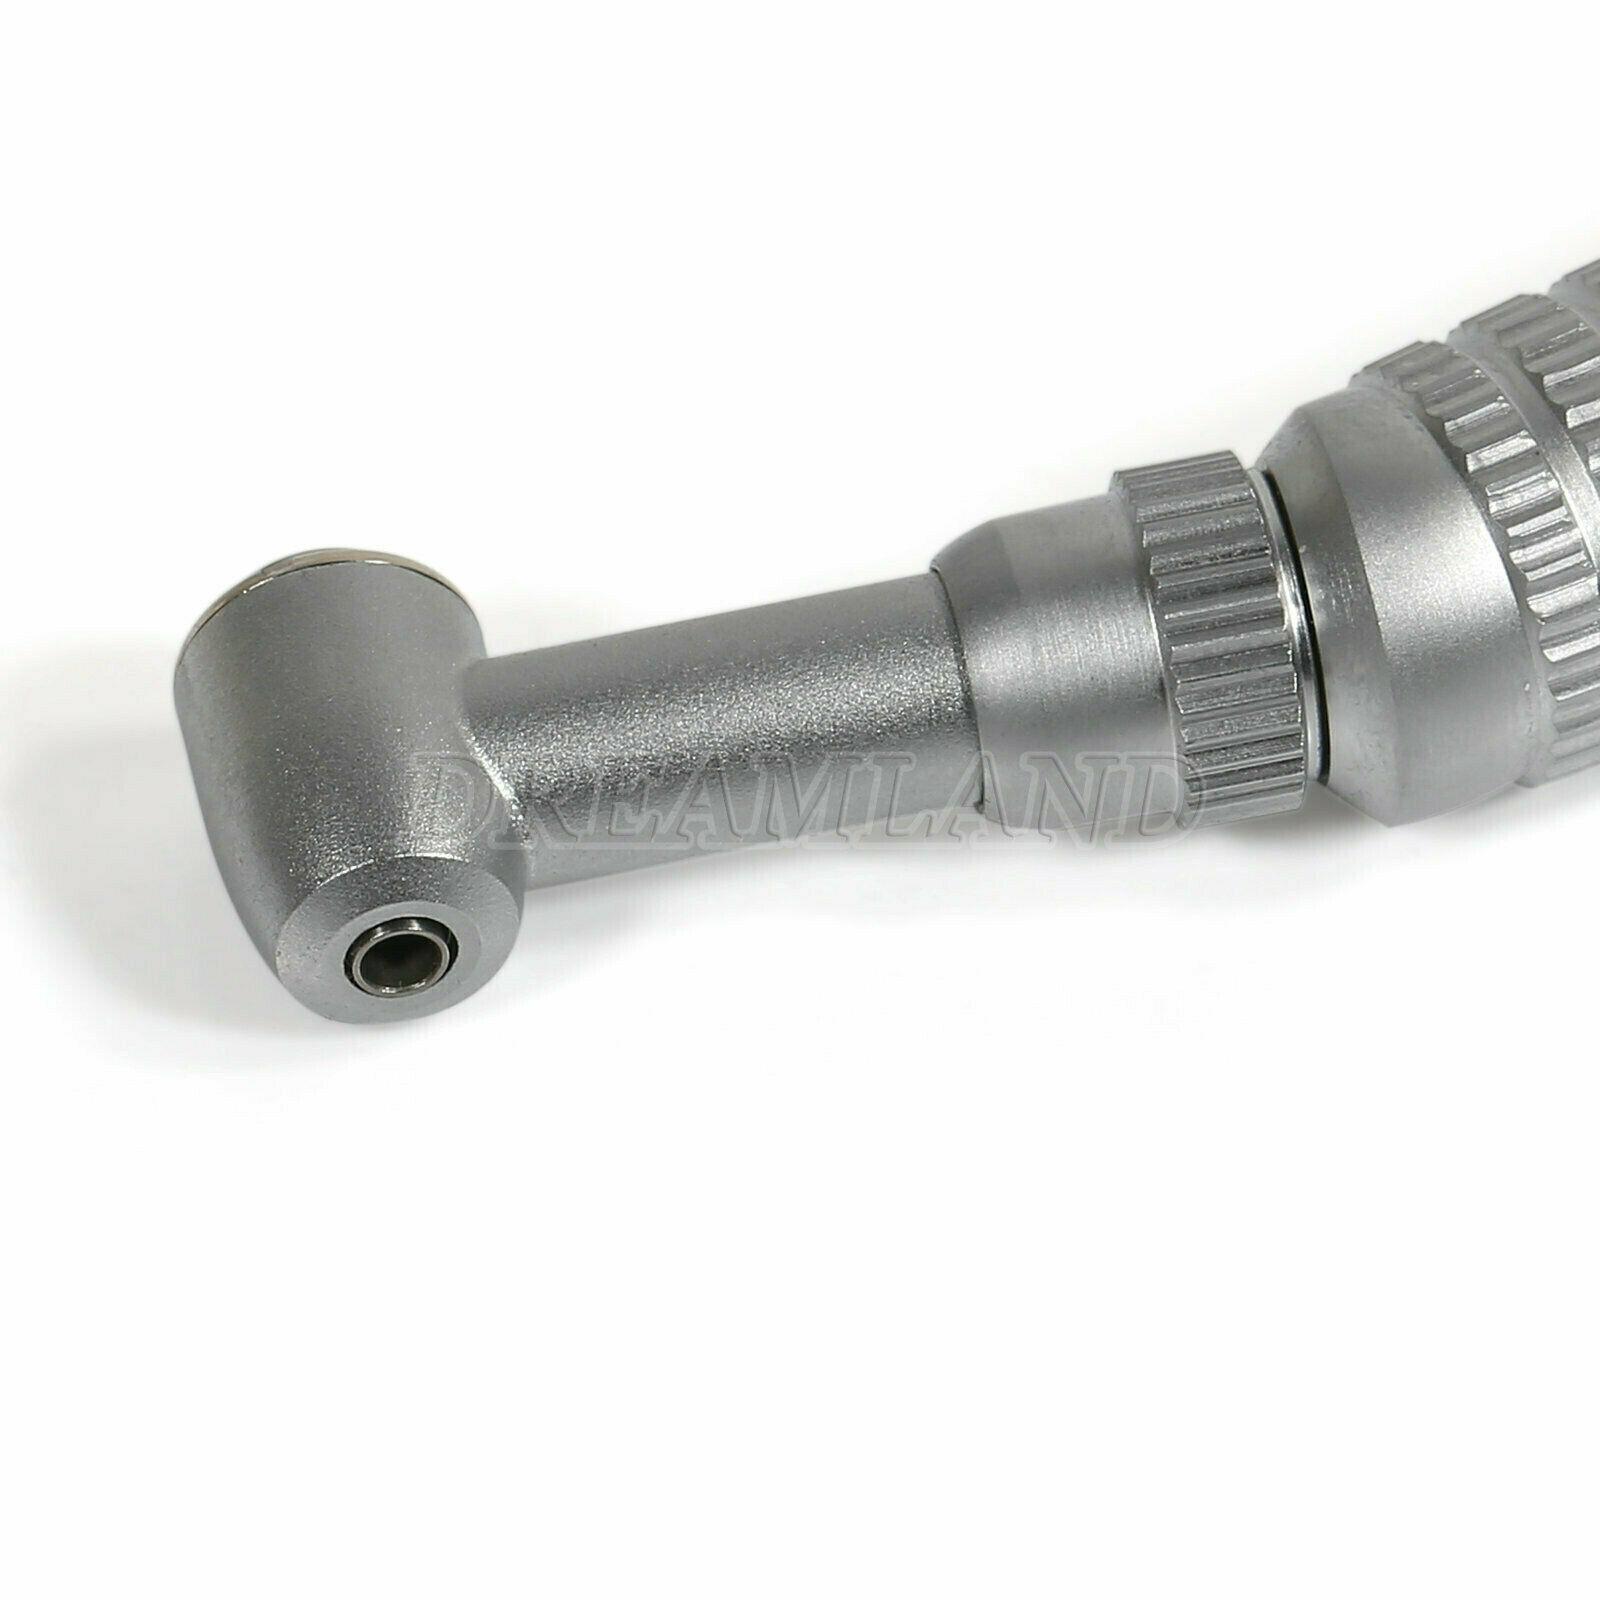 Изображение товара: 5 * NSK стильная Стоматологическая низкоскоростная Накладка для углового наконечника с нажимной кнопкой